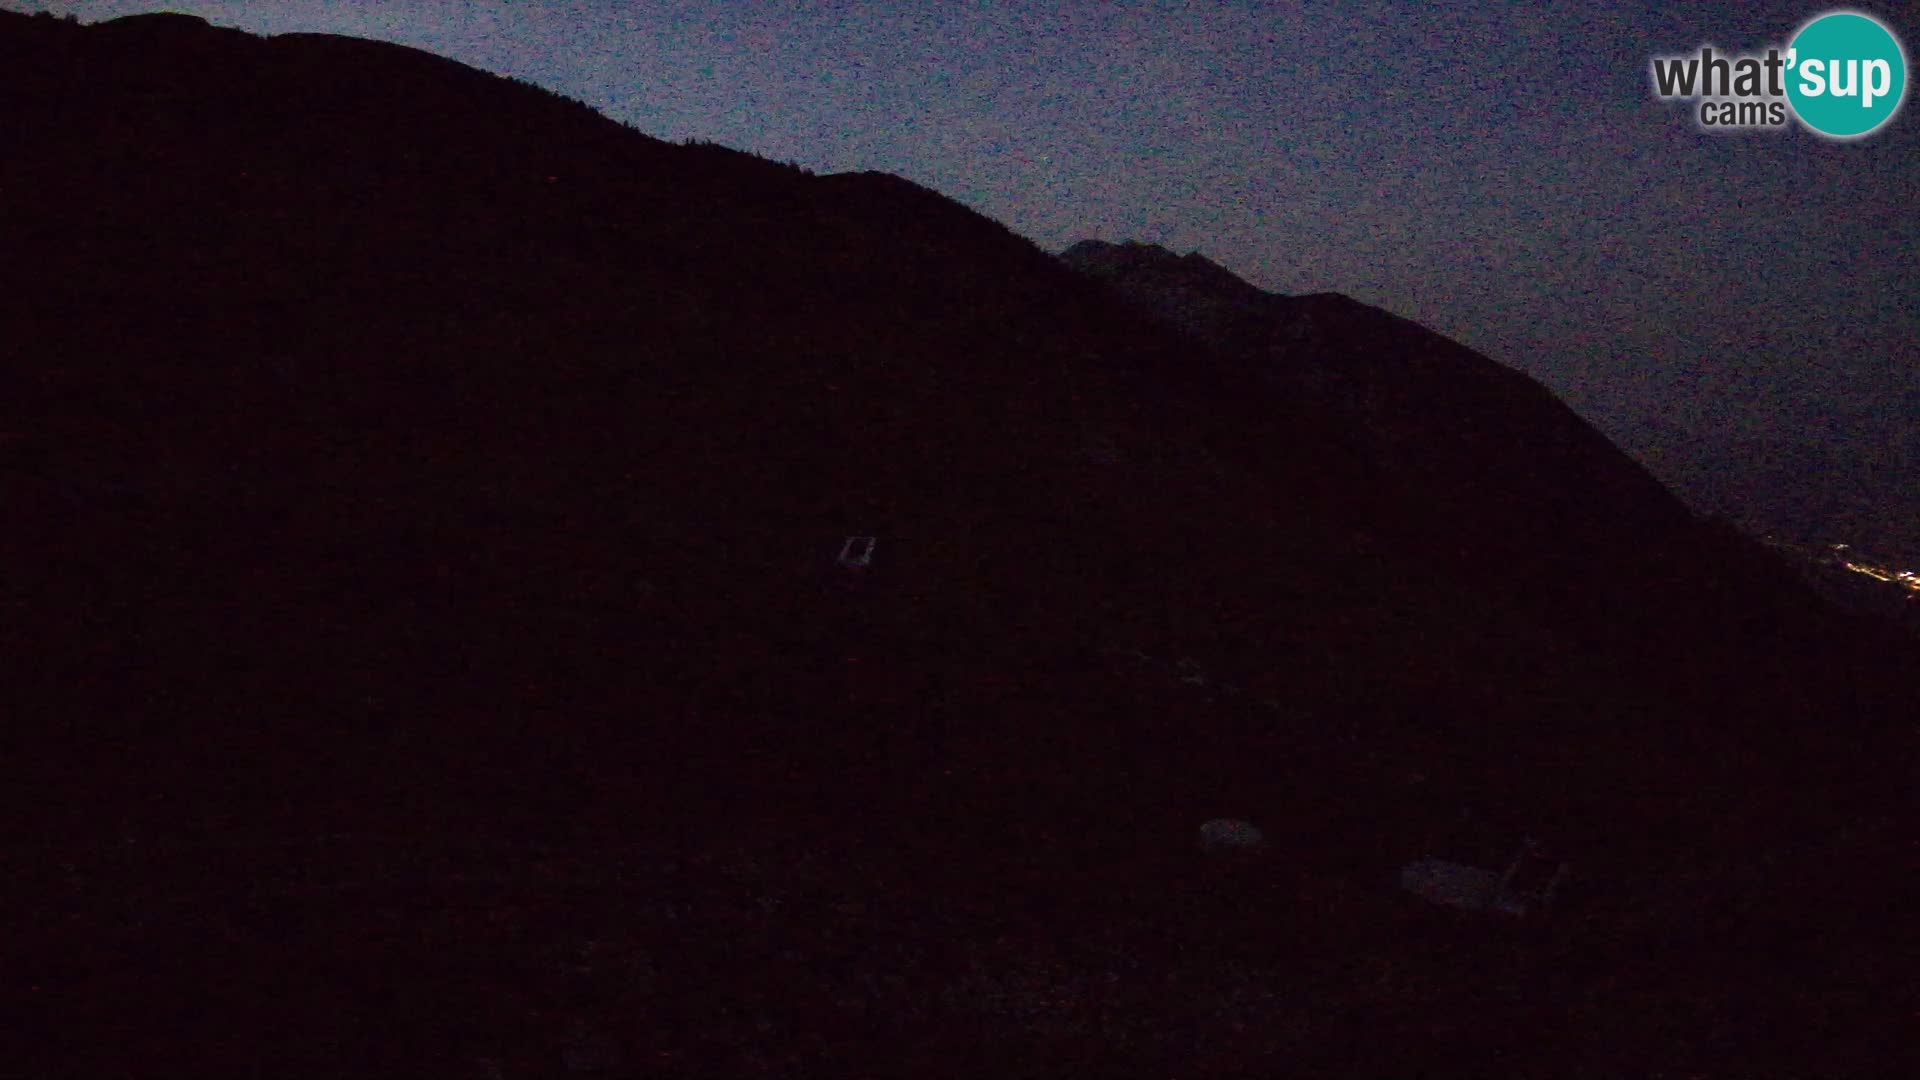 Struška nad Jesenicami spletna kamera planina Svečica (Belška planina) – Karavanke